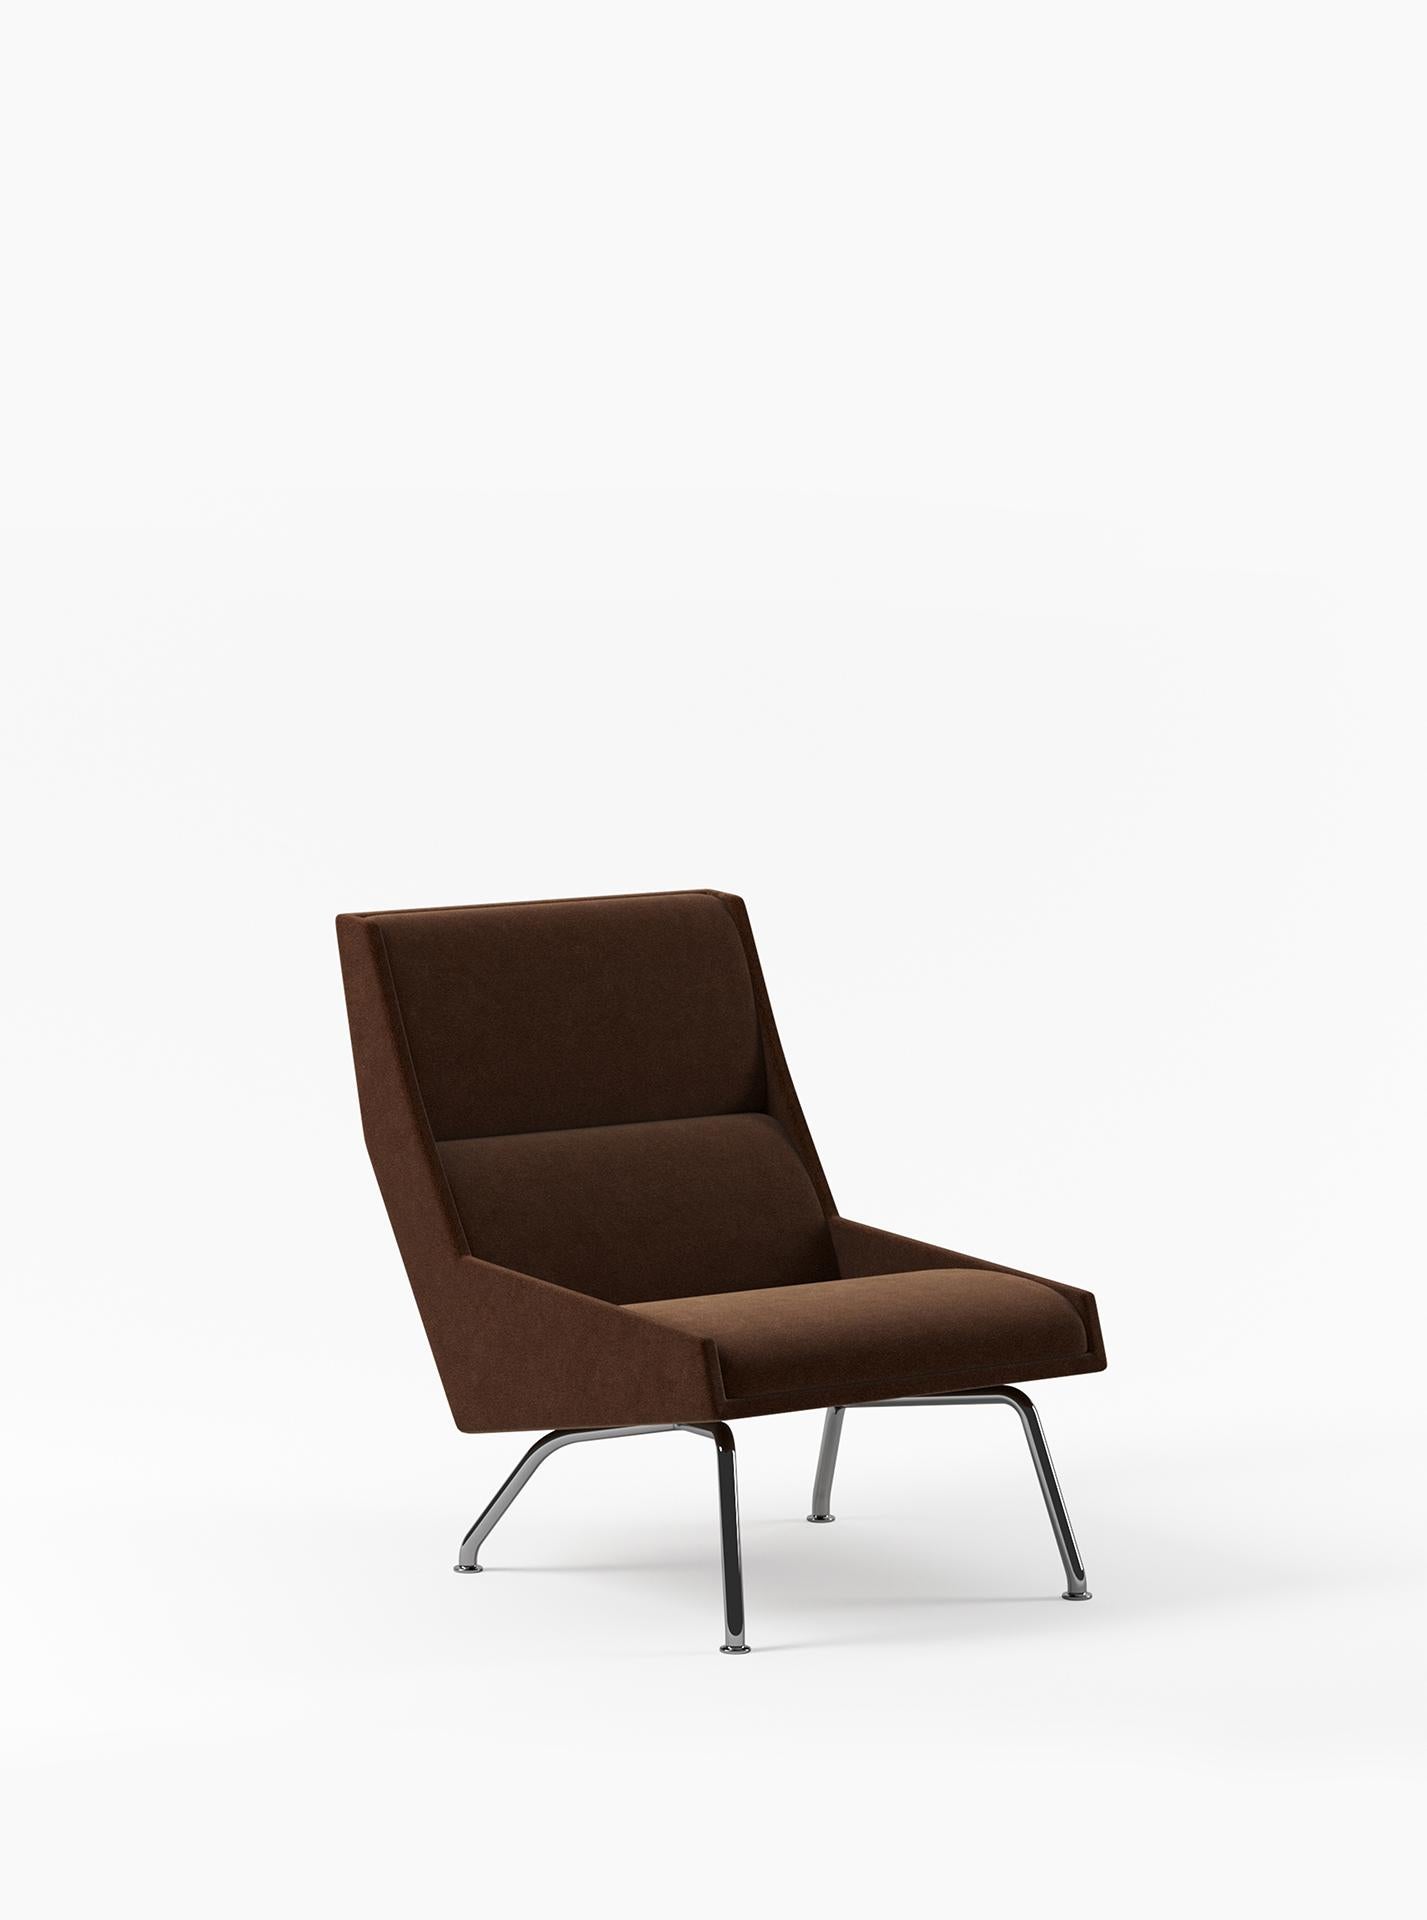 Le fauteuil Kent témoigne de l'art de la forme et de la fabrication. Elle incarne une silhouette élégante, s'inspirant des éléments emblématiques du design italien des années 1950, notamment les lignes anguleuses de la célèbre chaise 811 de Gio